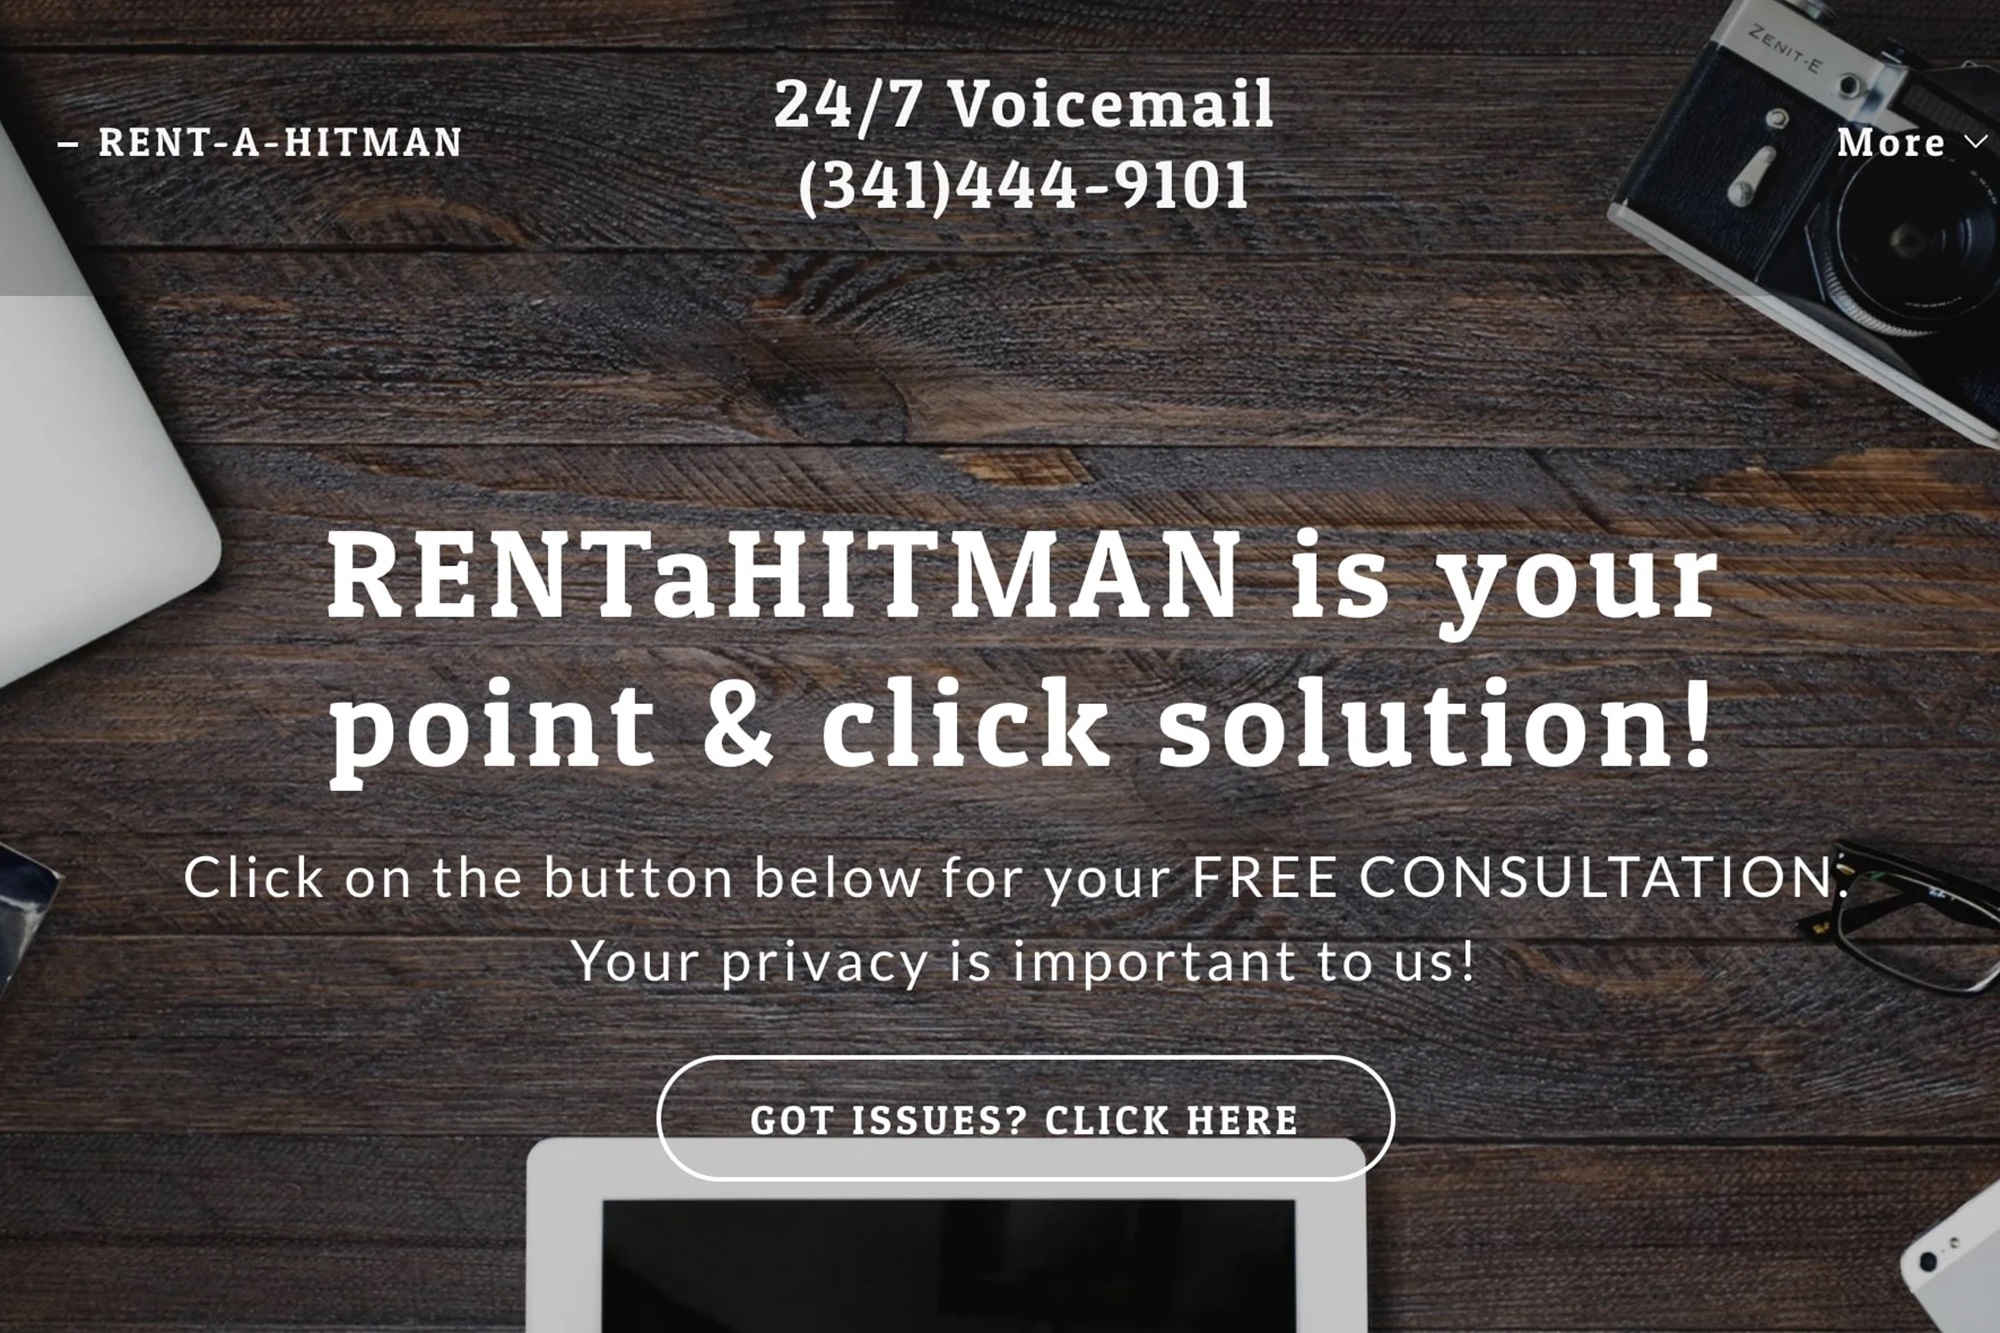 Giao diện trang web RentAHitman.com, với lời giới thiệu sẽ bảo mật mọi thông tin của 